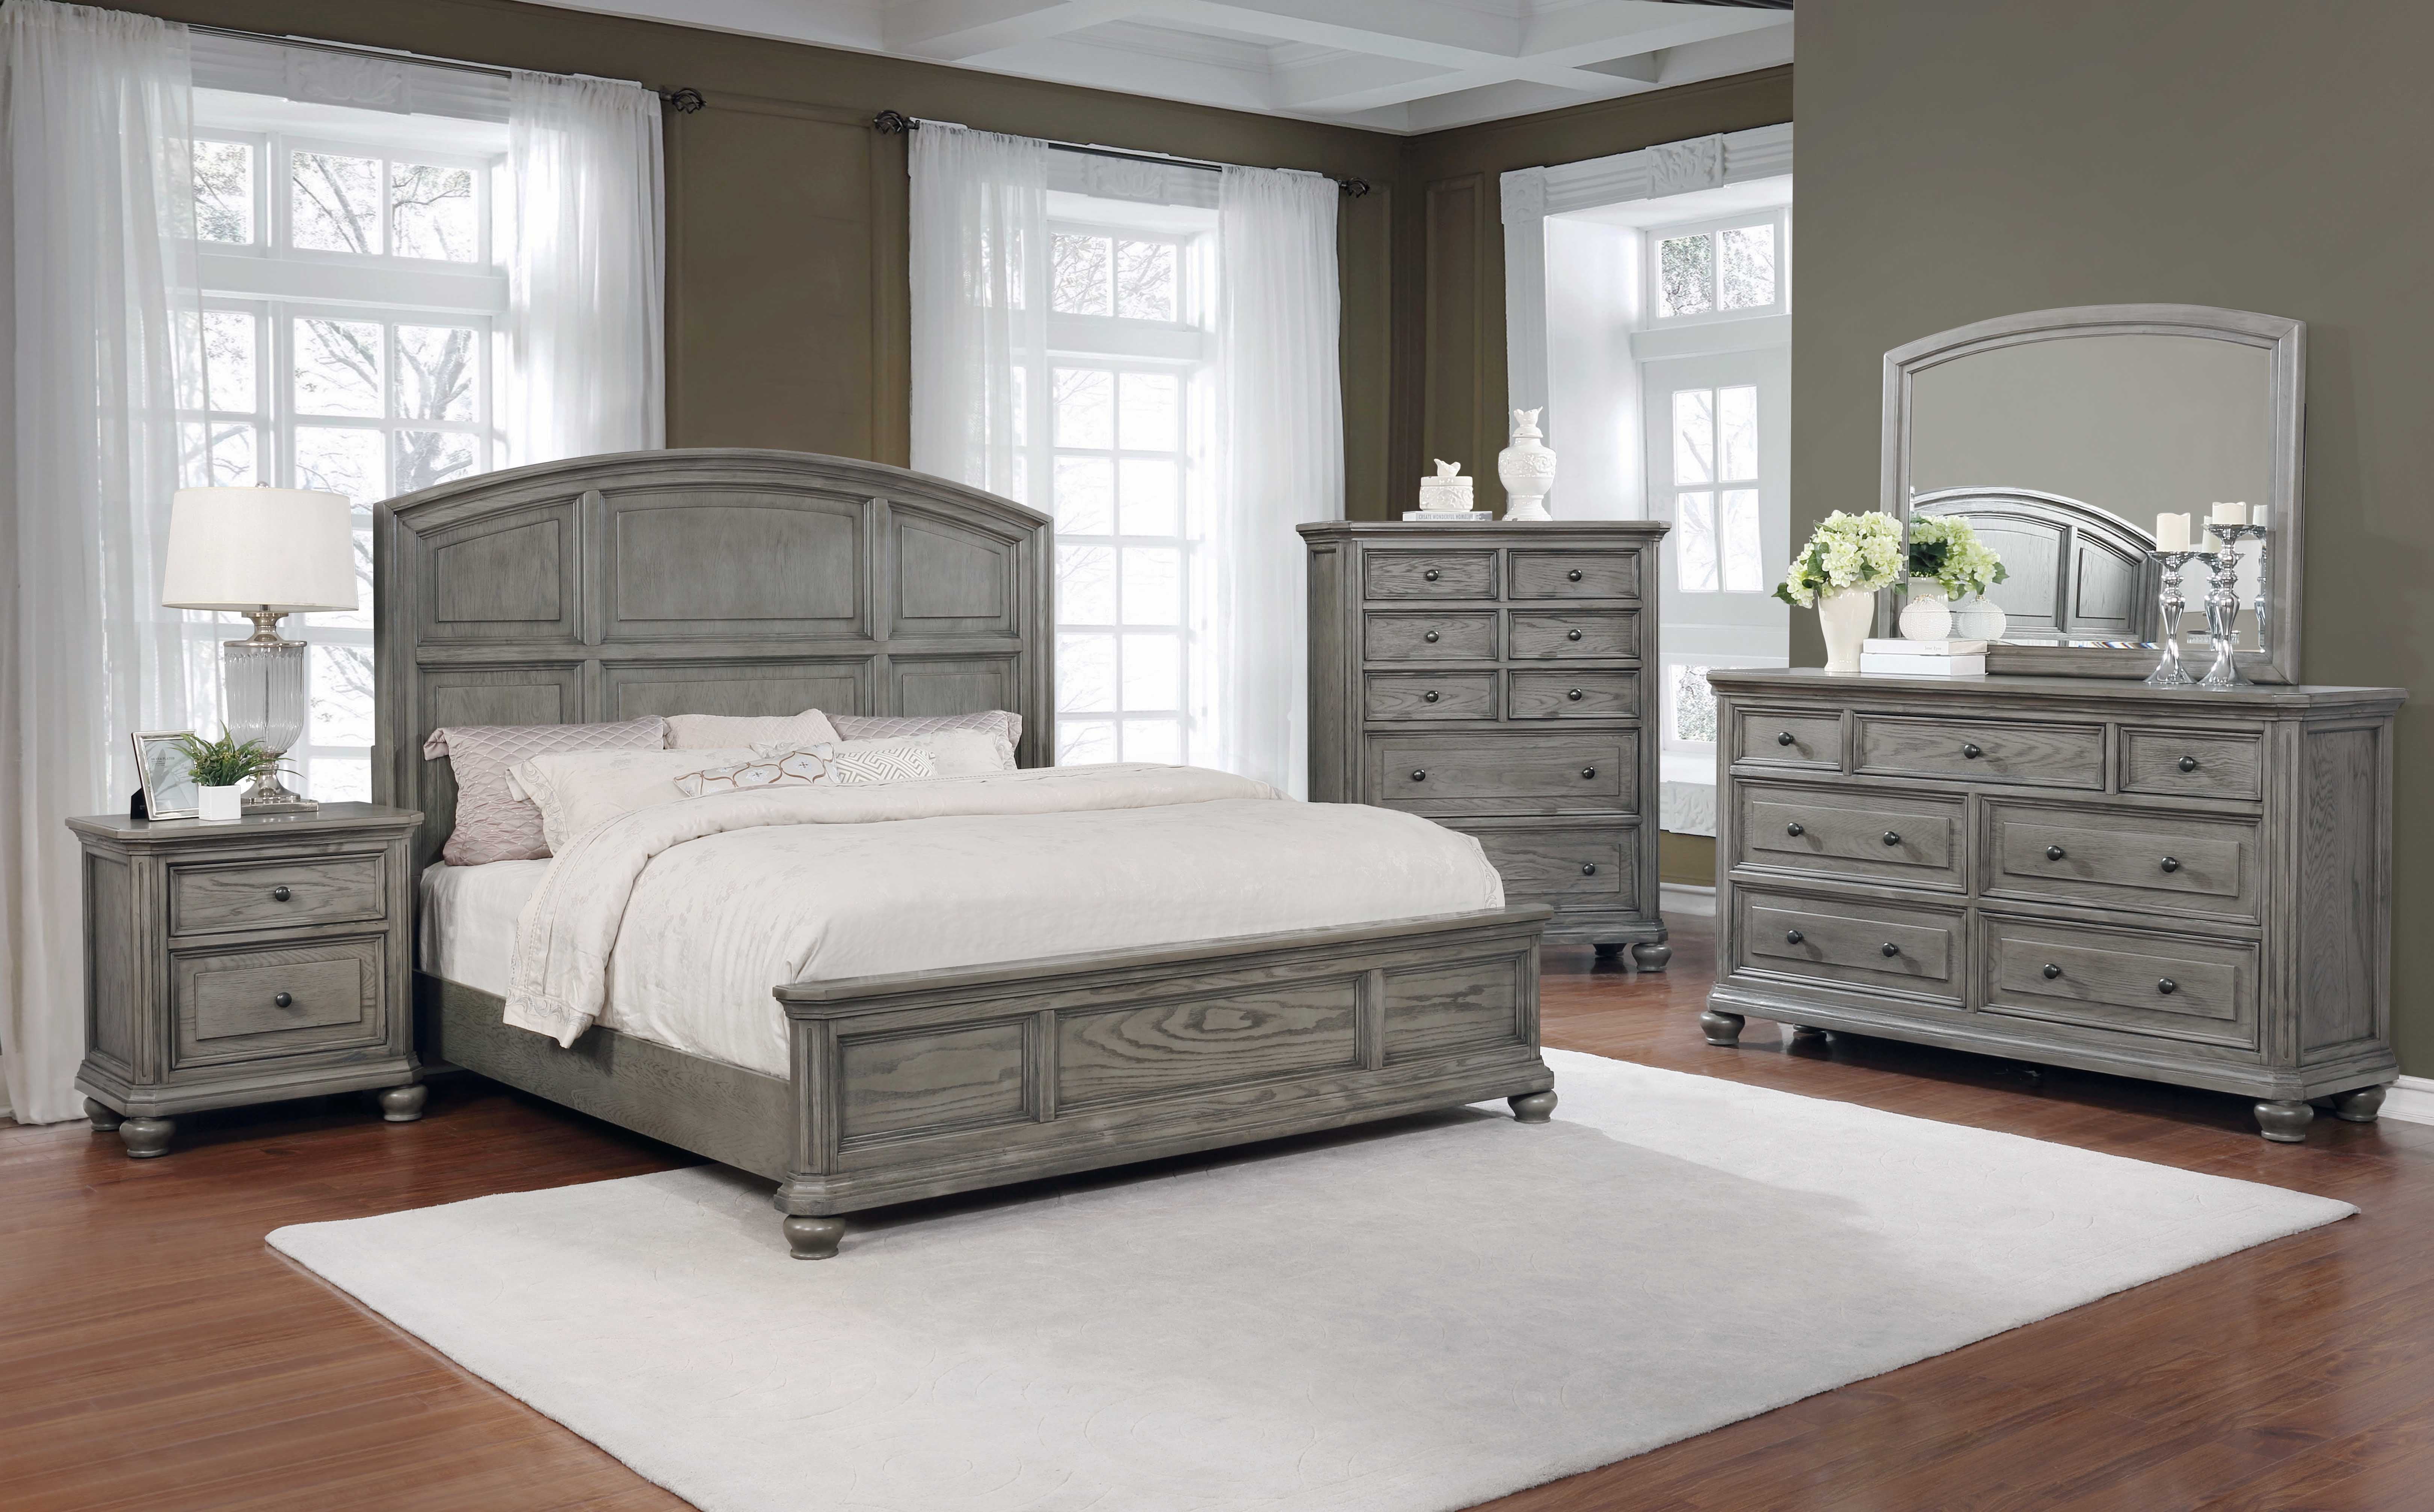 Best Master Furniture 5 Pcs Queen Bedroom Set in Grey Rustic Wood - Walmart.com